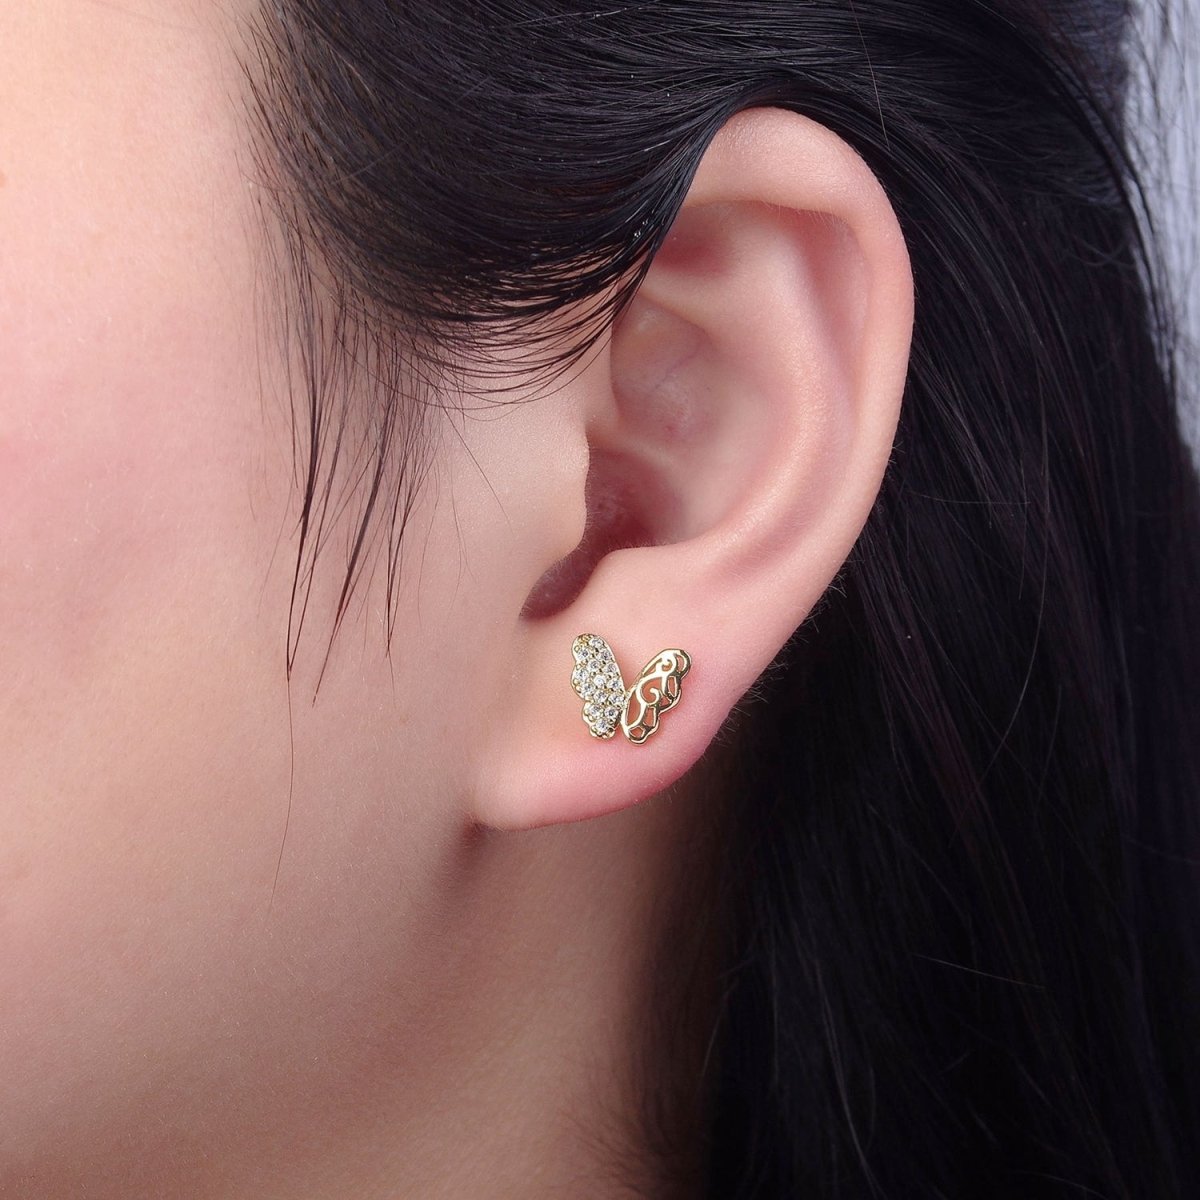 Dainty Gold Butterfly Stud Earrings, 18k Gold Filled Delicate Butterly Stud Earring Earlobe Earring V-127 - DLUXCA